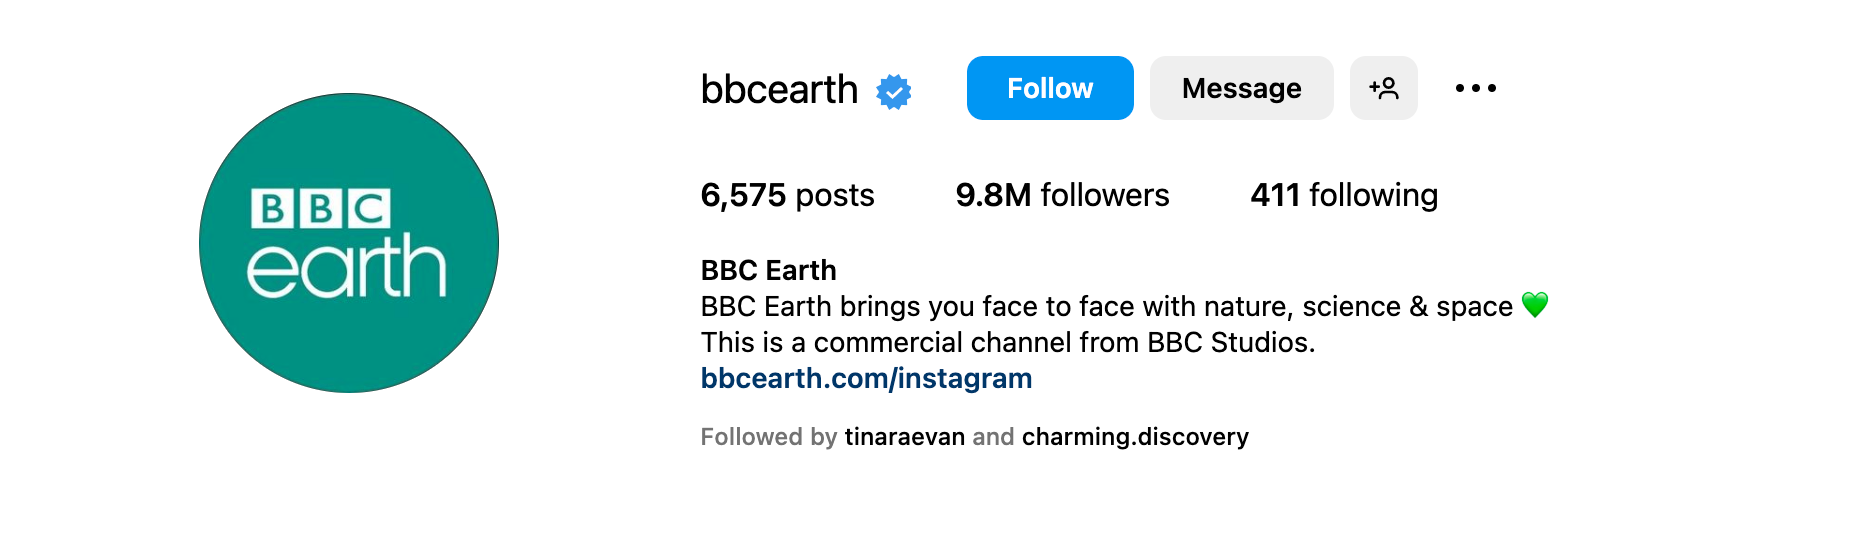 Instagram bio ideas - BBC